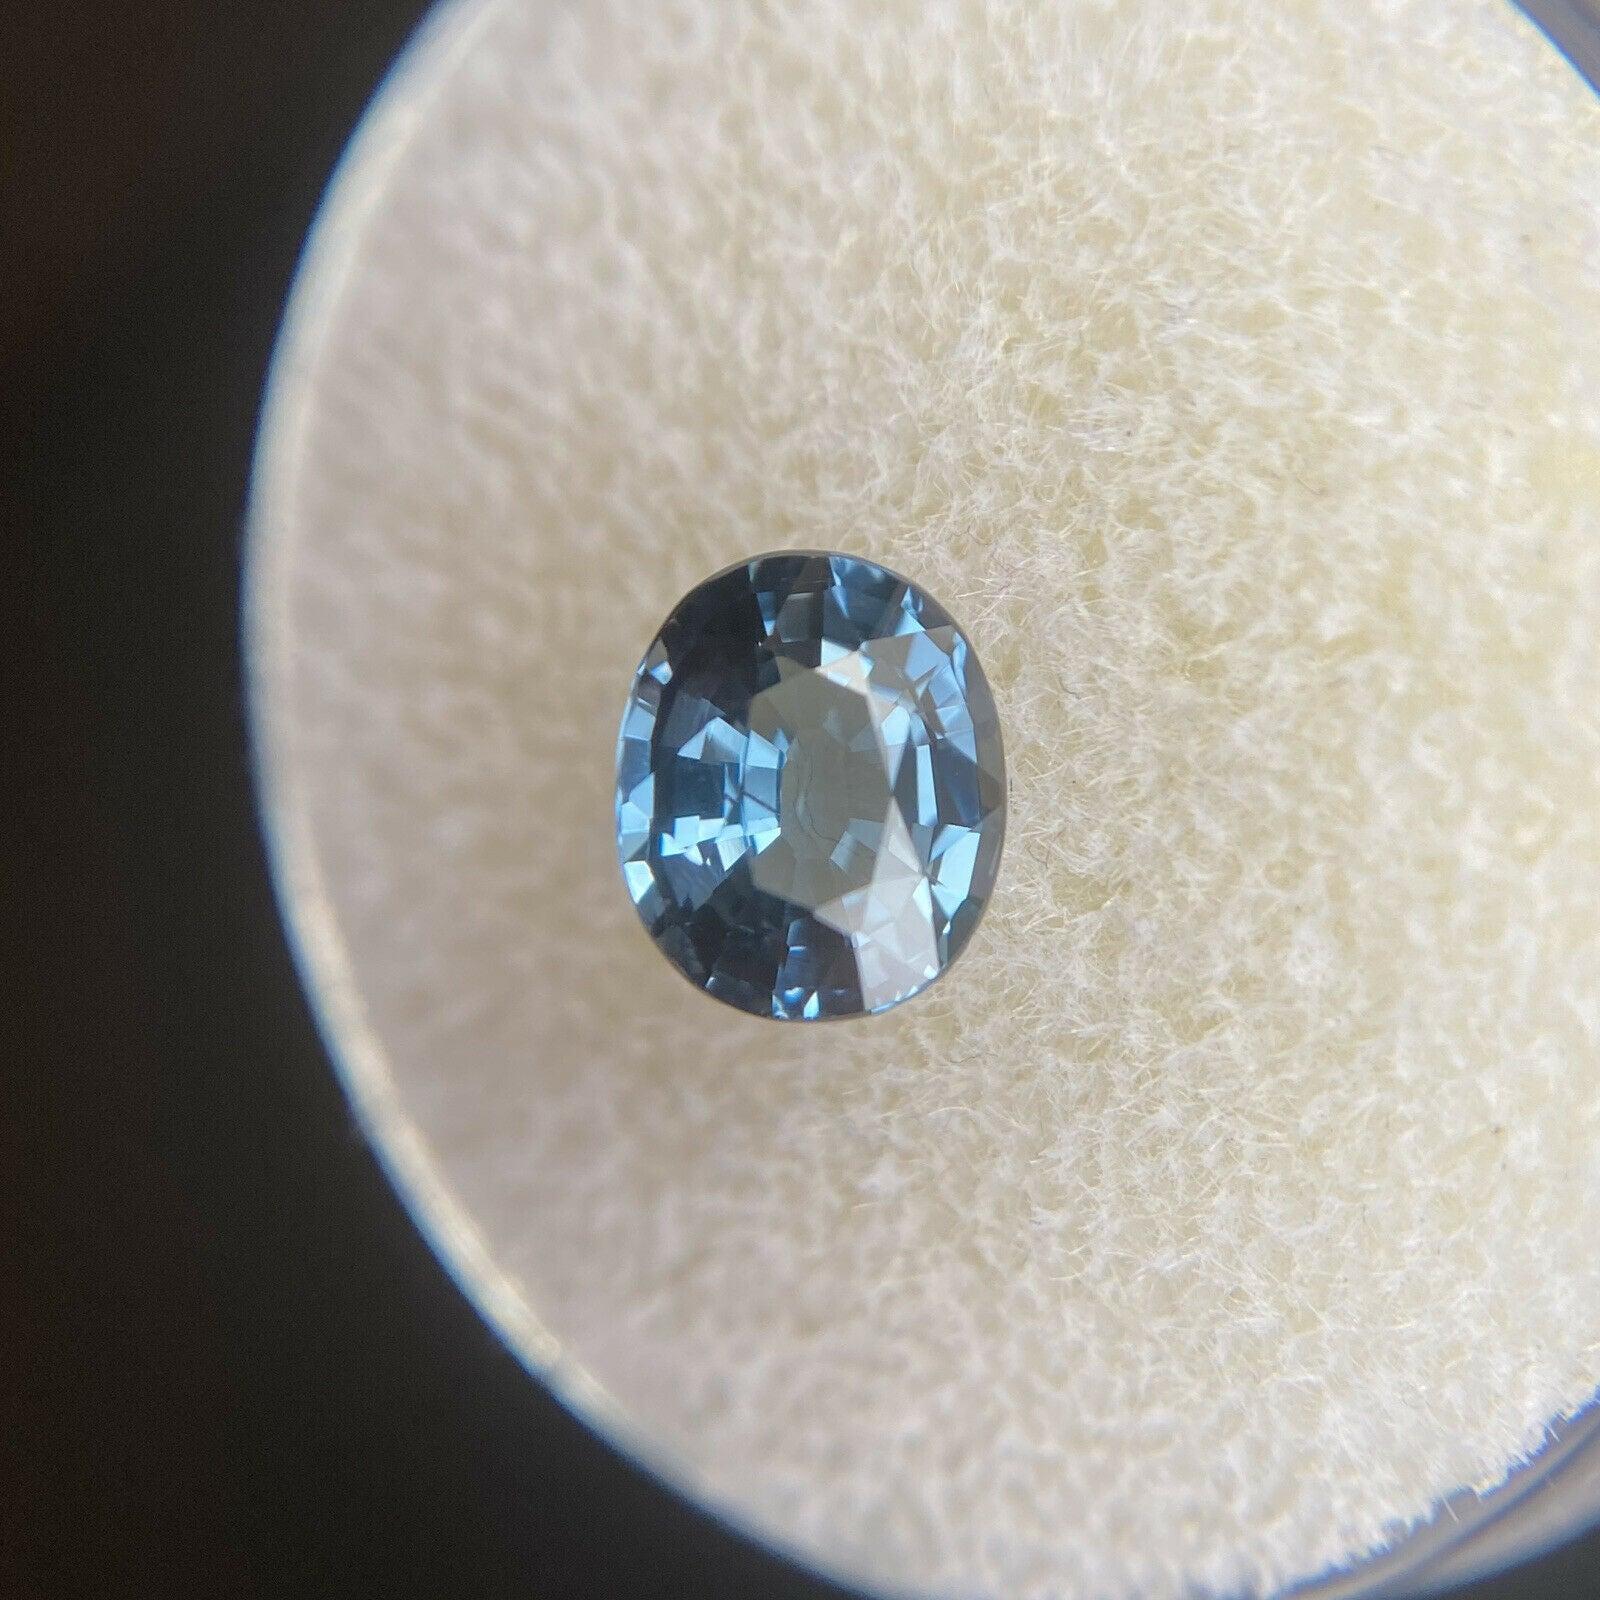 Fine pierre précieuse rare de taille ovale 1.20ct de spinelle bleu 7 x 5.8mm

Fine pierre précieuse Spinel bleu naturel. 
Rare spinelle d'une belle couleur bleu vif et d'une excellente clarté. Une pierre précieuse pratiquement sans défaut.